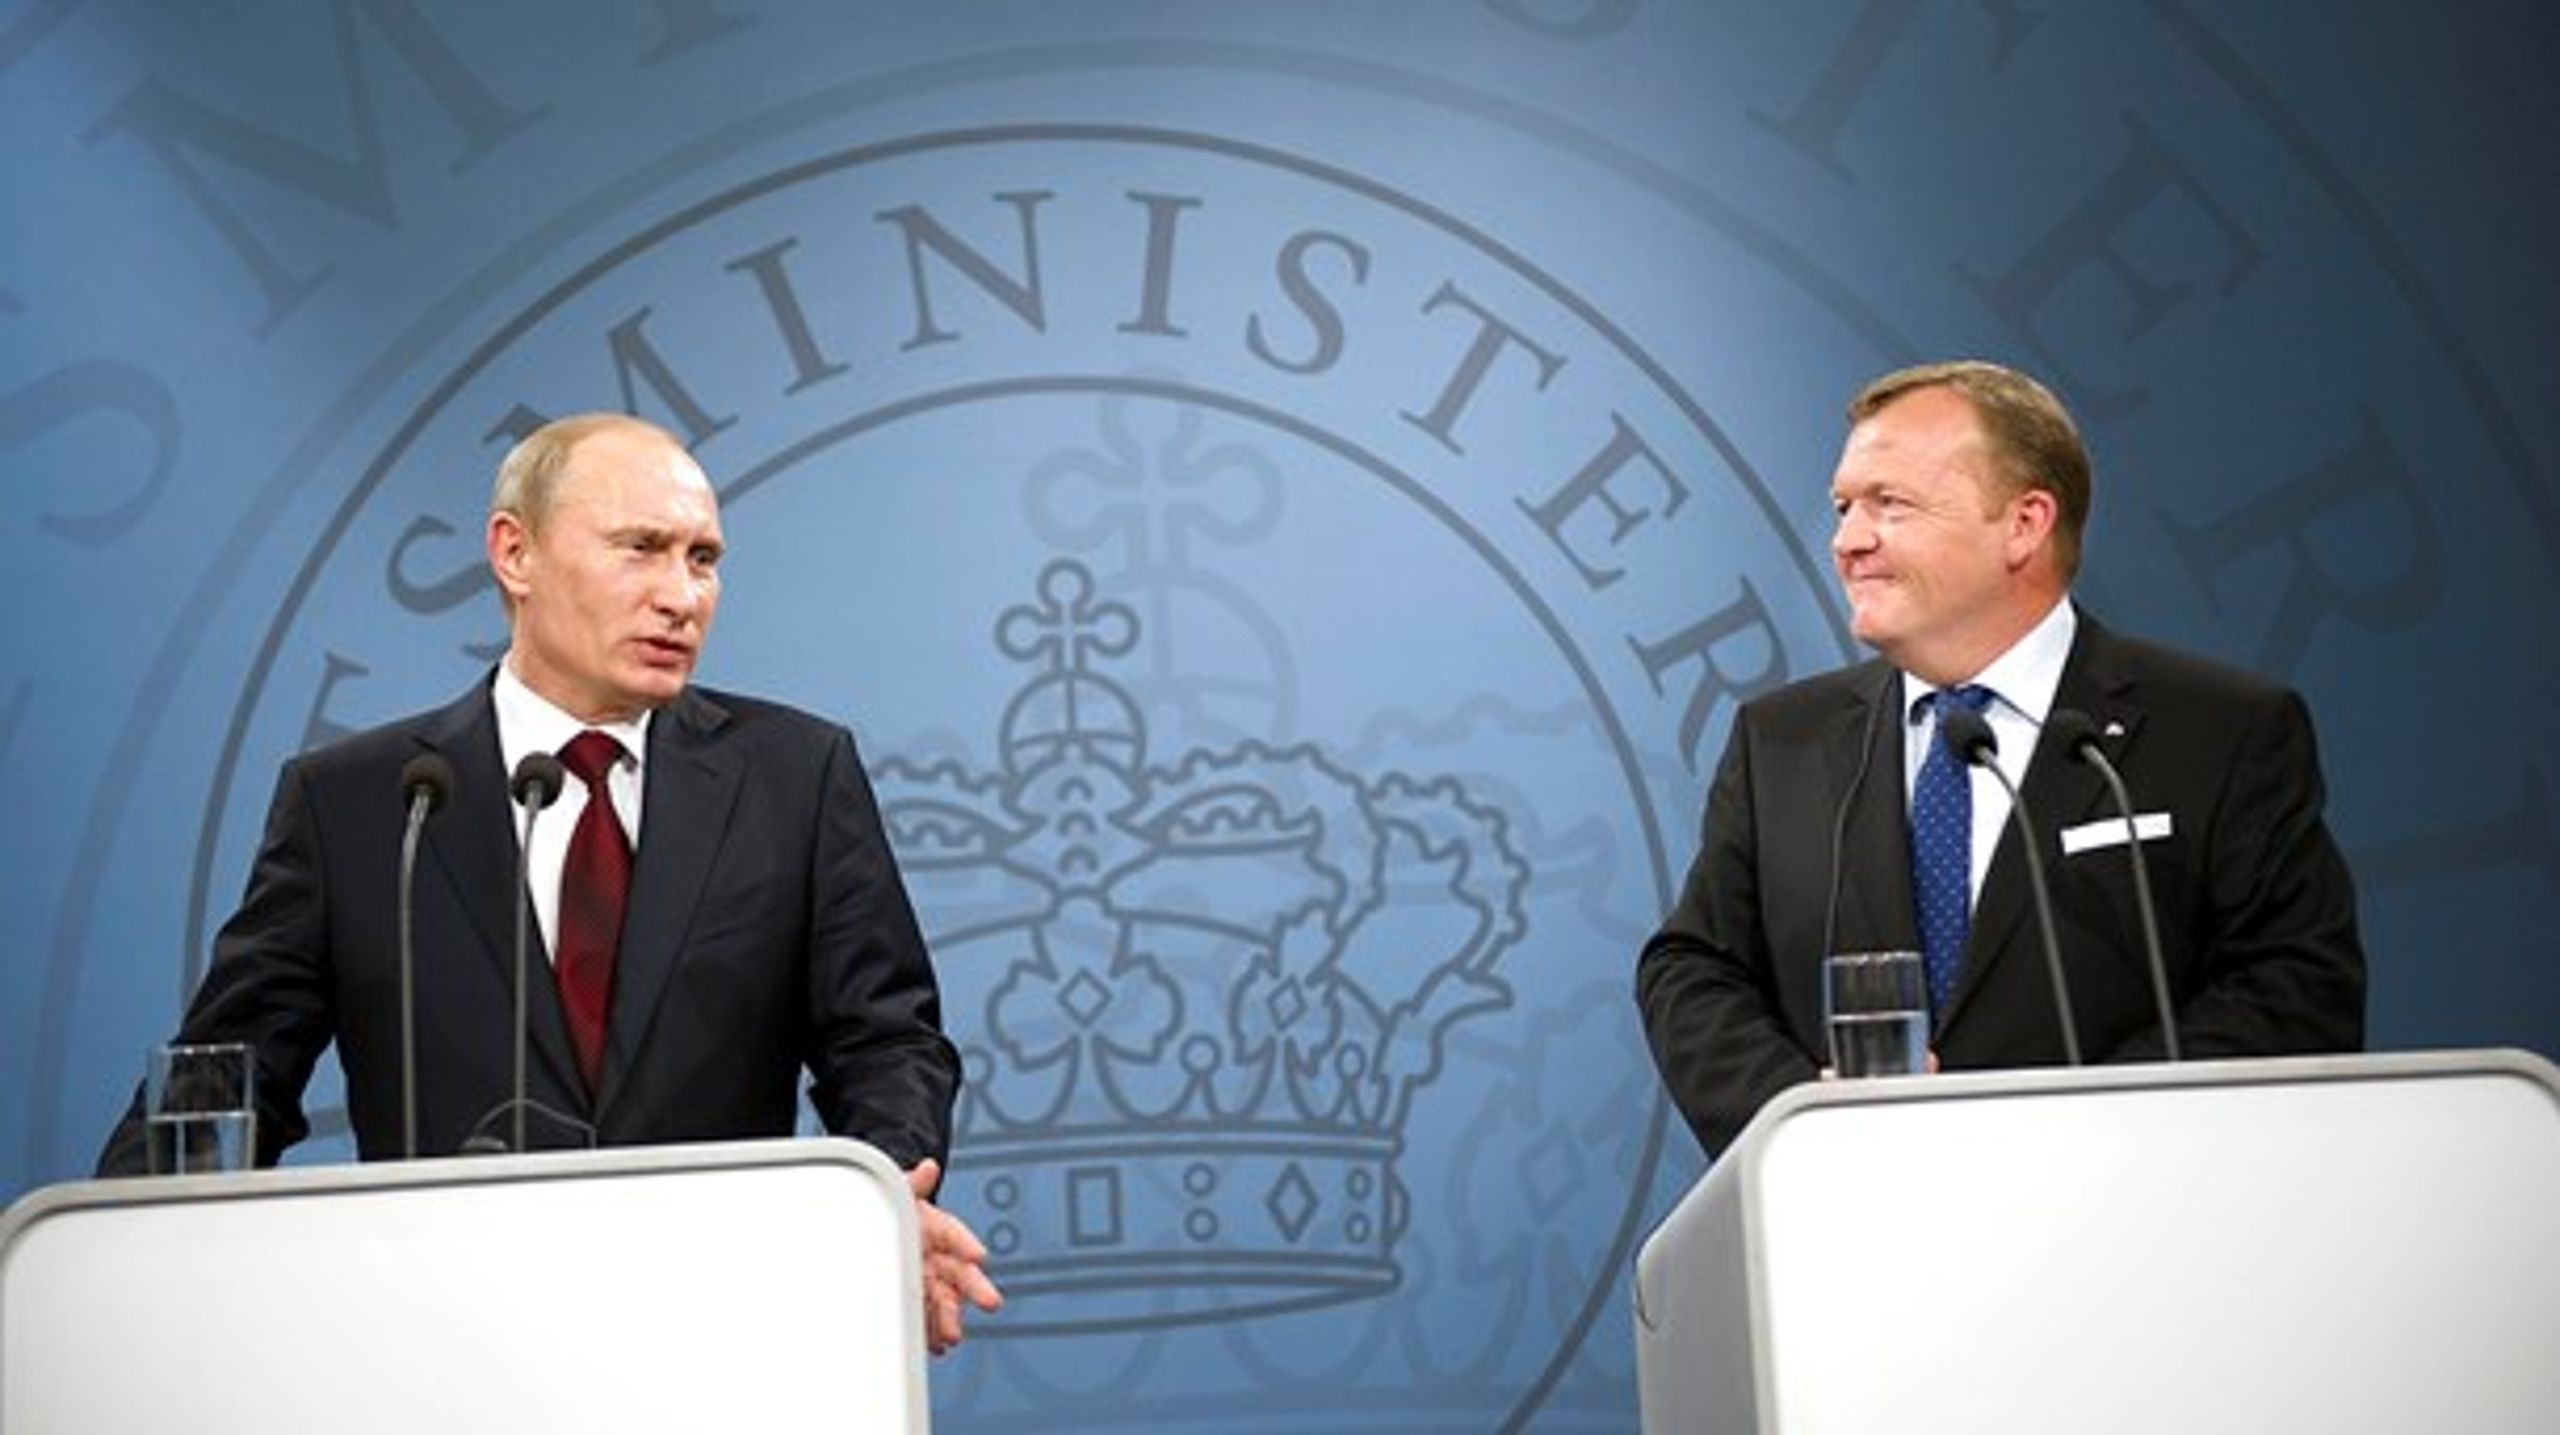 Ruslands præsident, Vladimir Putin, og statsminister Lars Løkke Rasmussen holdt fælles pressemøde under Putins besøg i Danmark i 2011, inden forholdet mellem Europa og Rusland blev forværret i 2014.